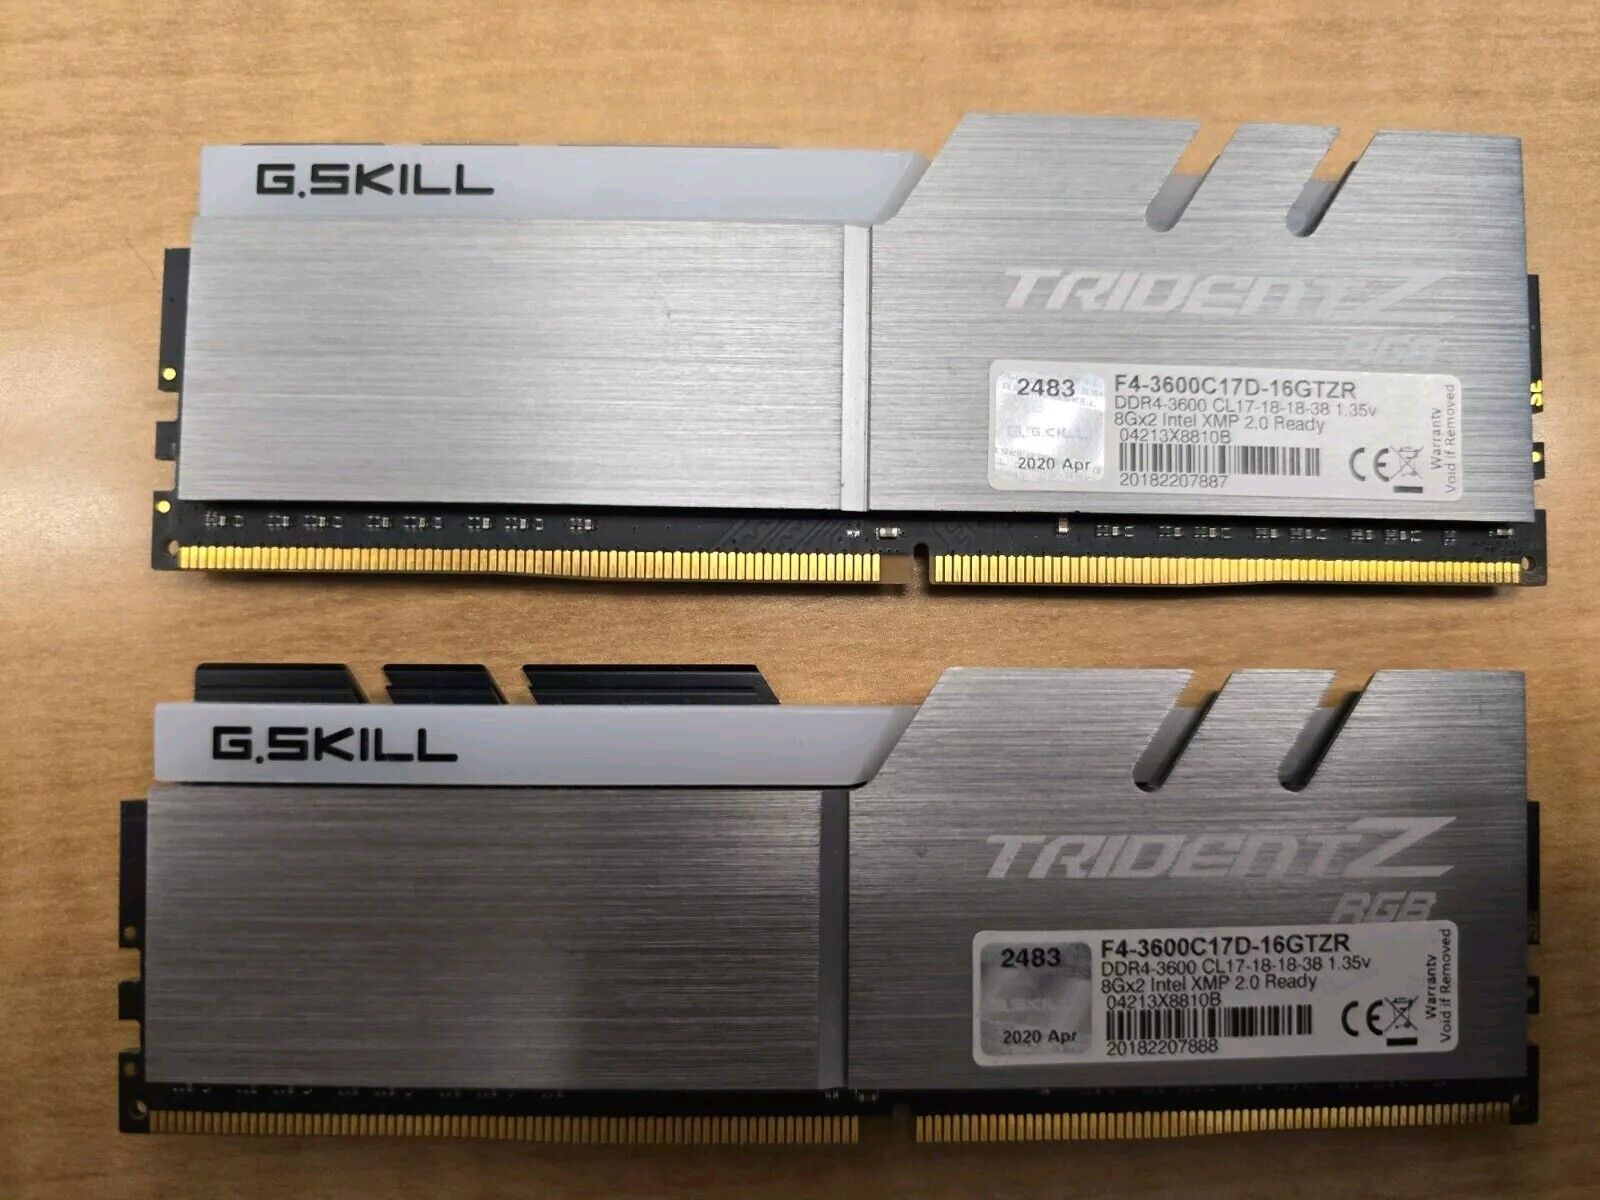 G.SKILL Trident Z RGB Series 16GB (8GBx2) DDR4 3600MHz RAM (F4-3600C17D-16GTZR)